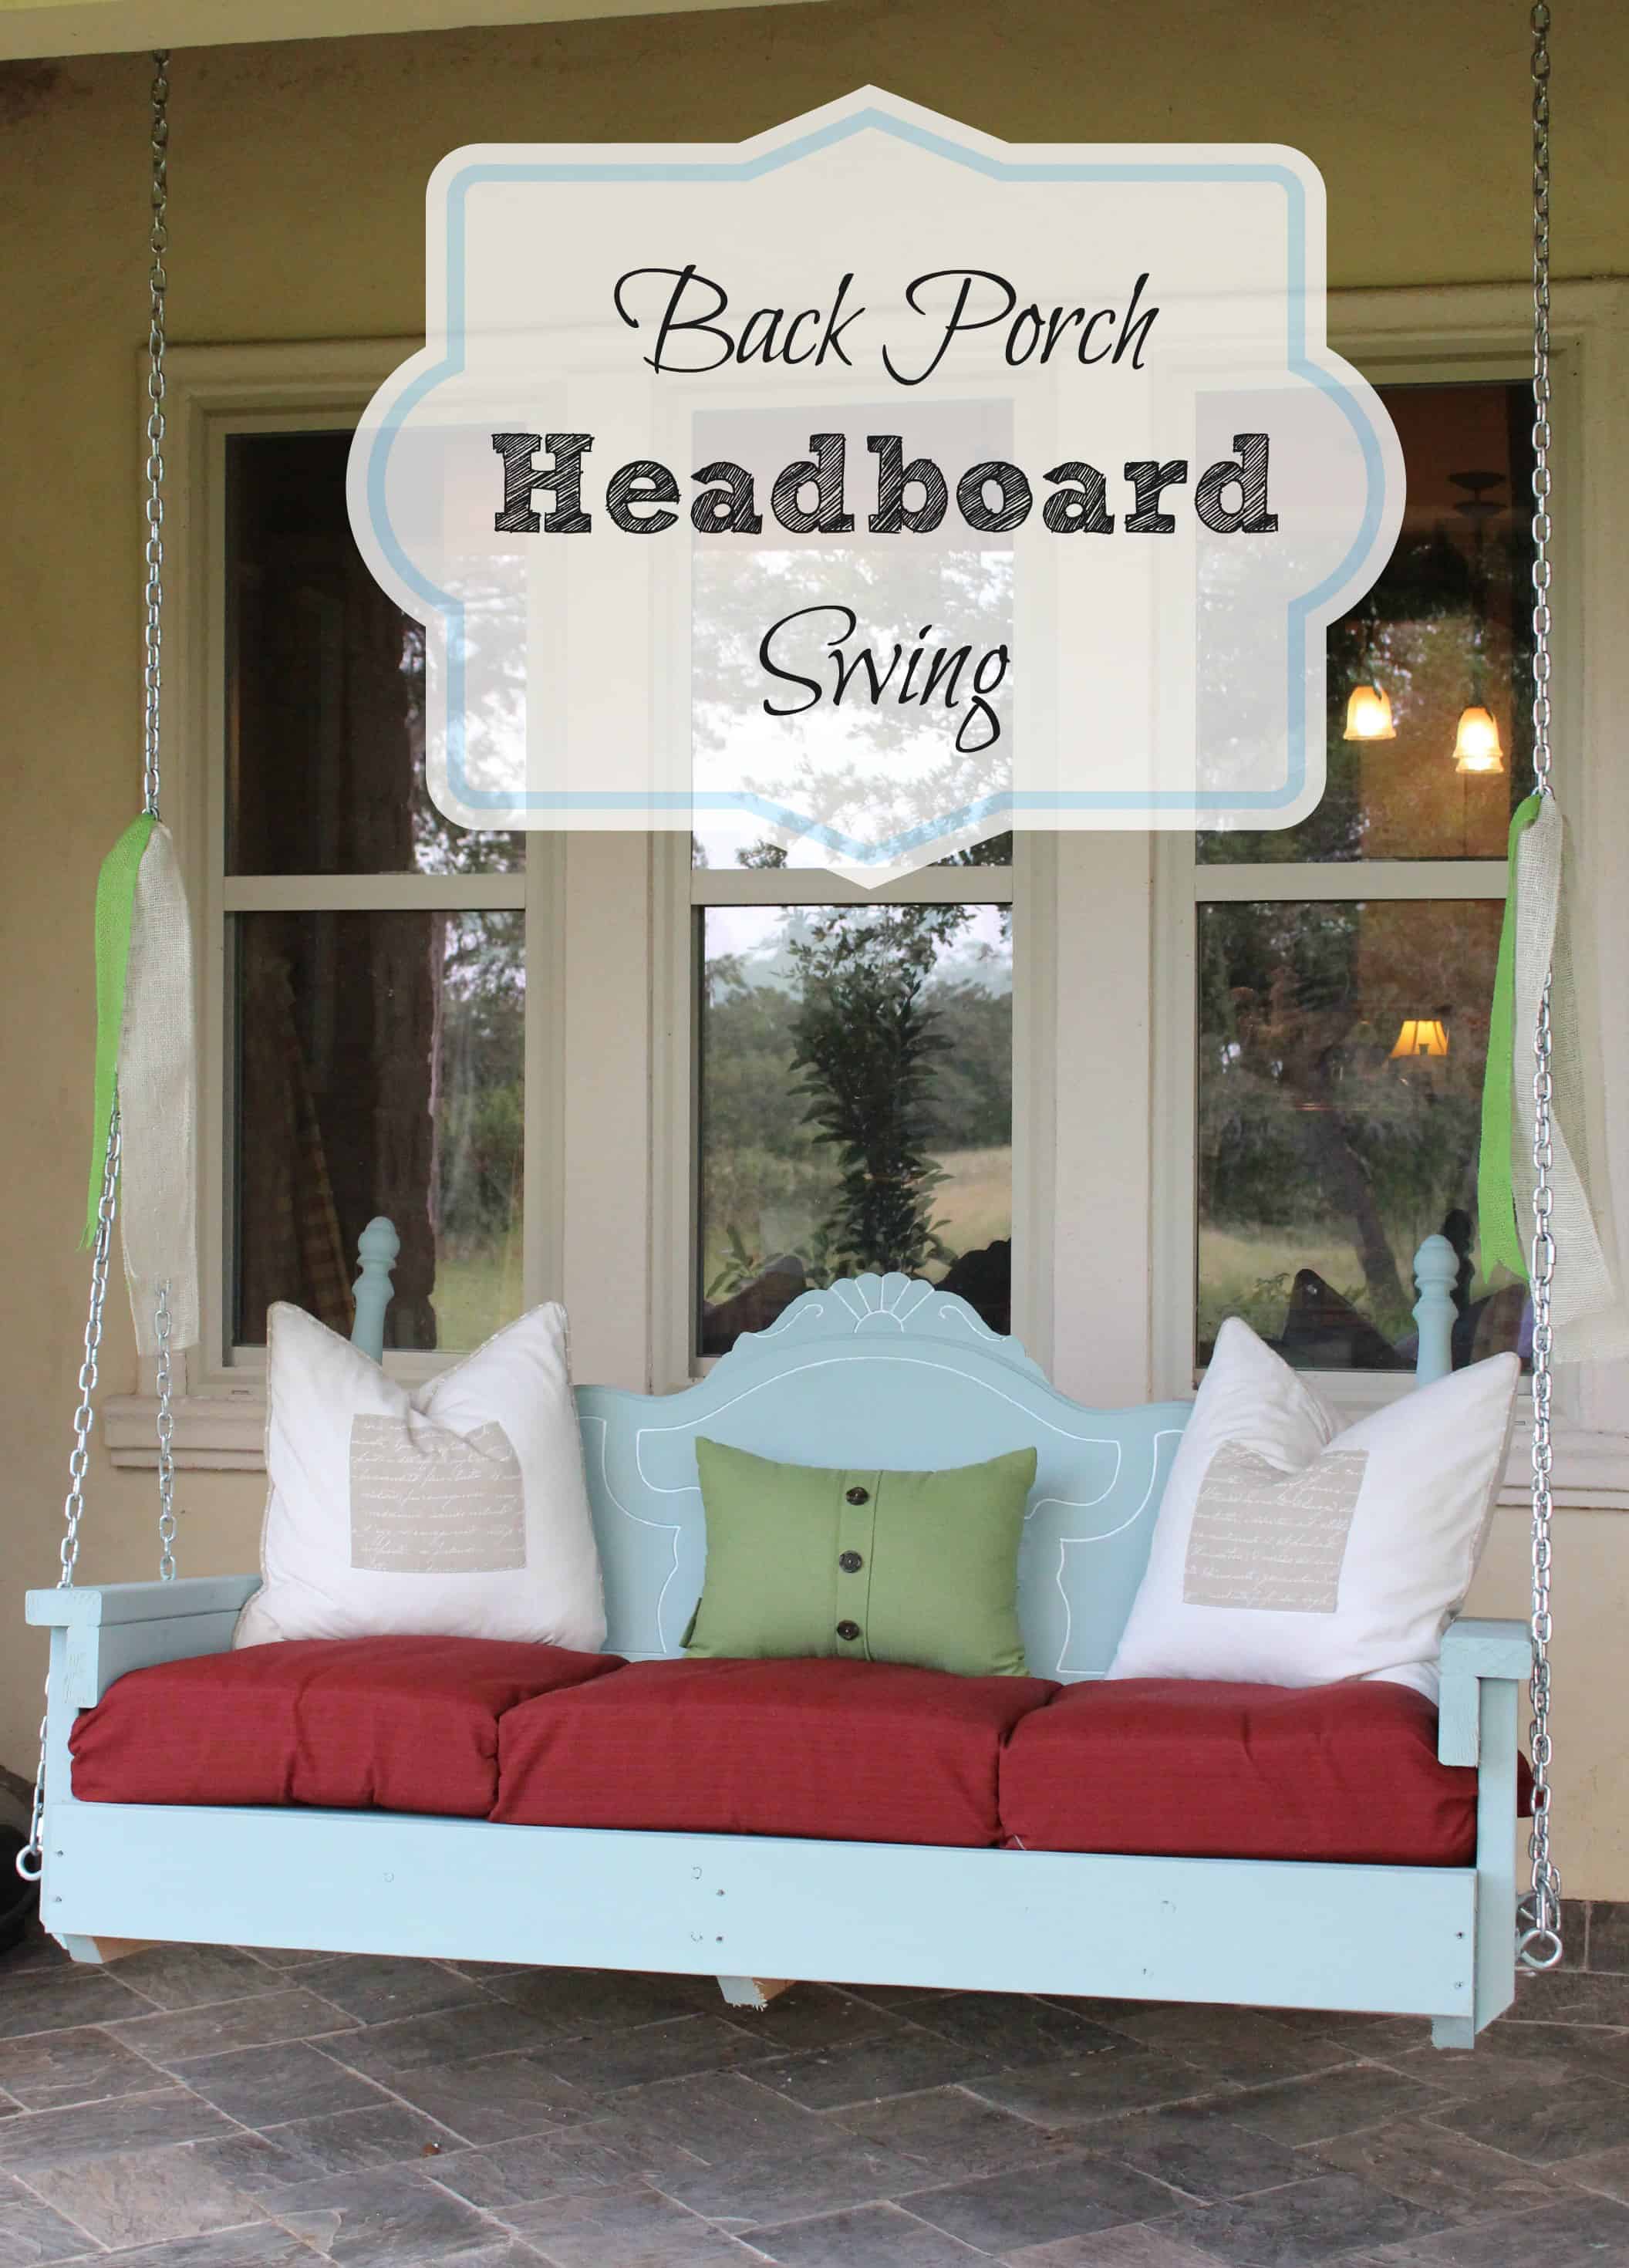 Back porch headboard swing